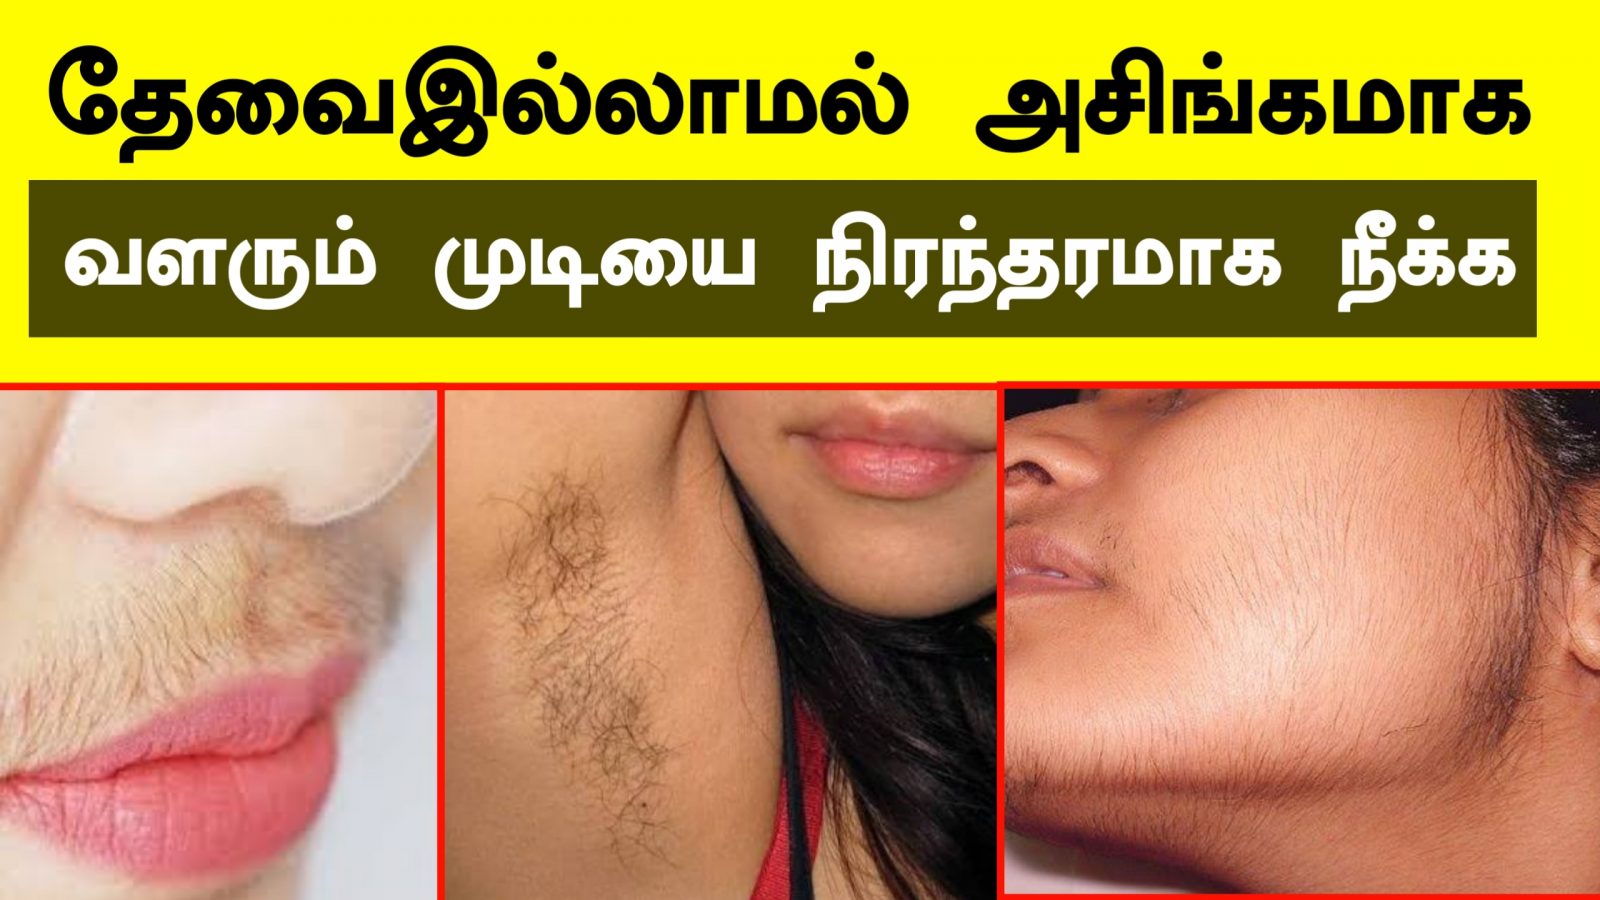 தேவையில்லாத முடியை நீக்குவது சுலபம் | Unwanted Hair Removal for Women naturally in Tamil | Nextday360